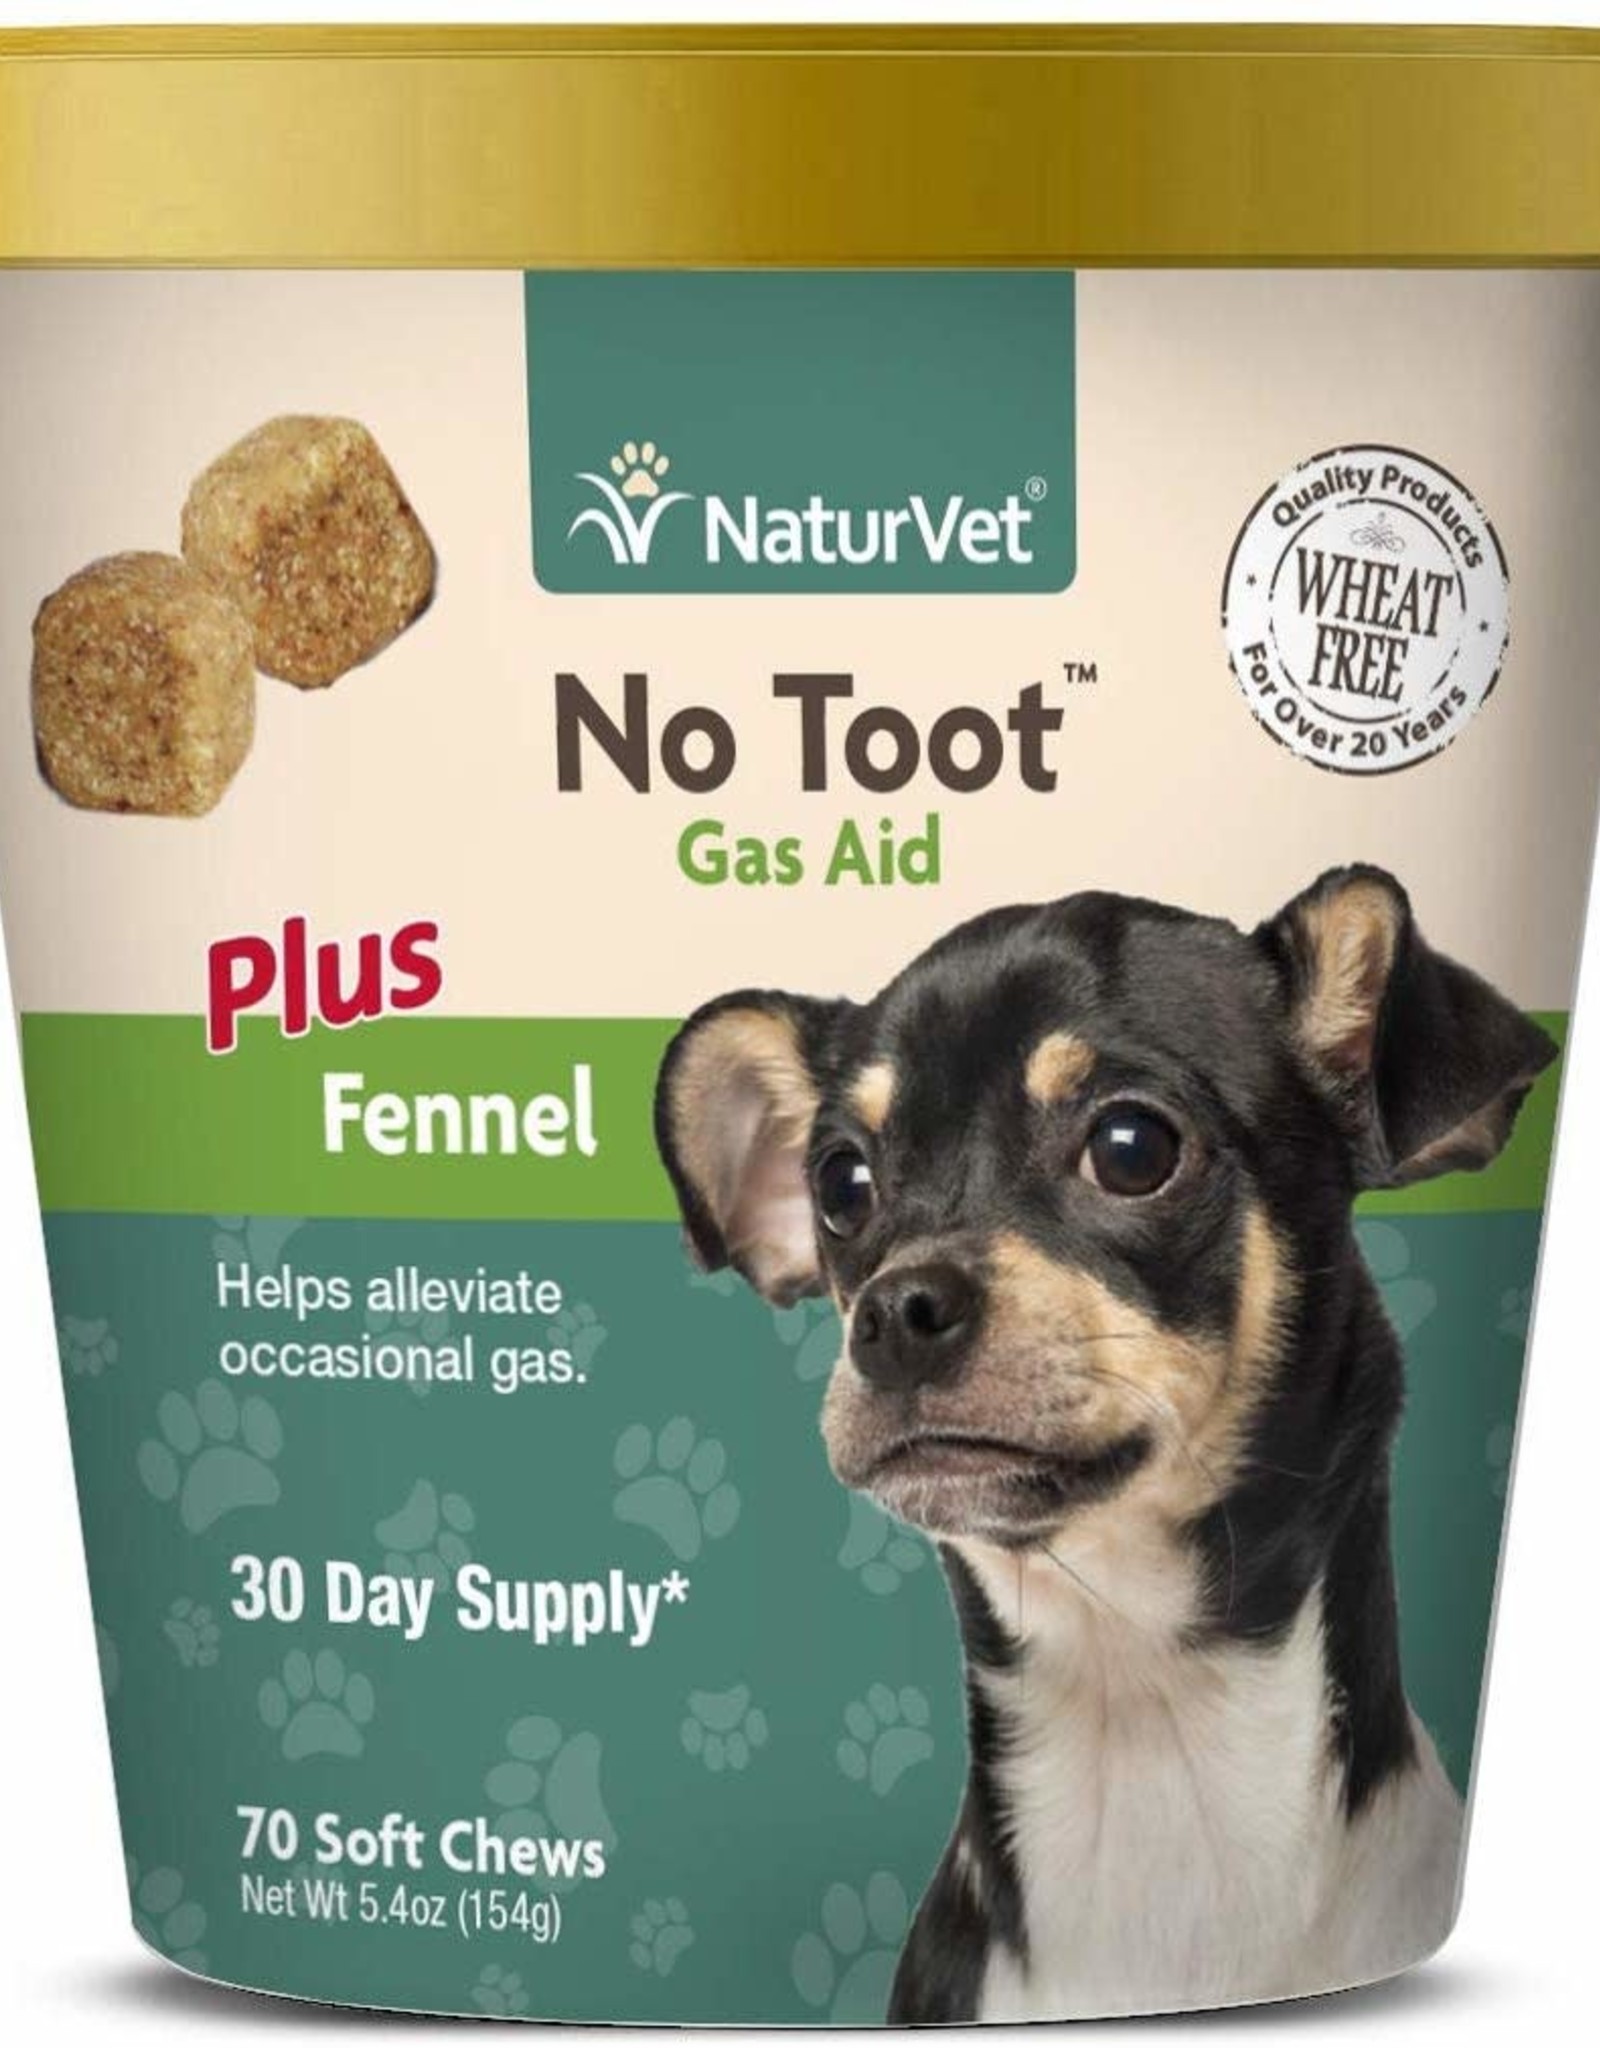 NATURVET NaturVet No Toot Gas Aid soft chew 70ct